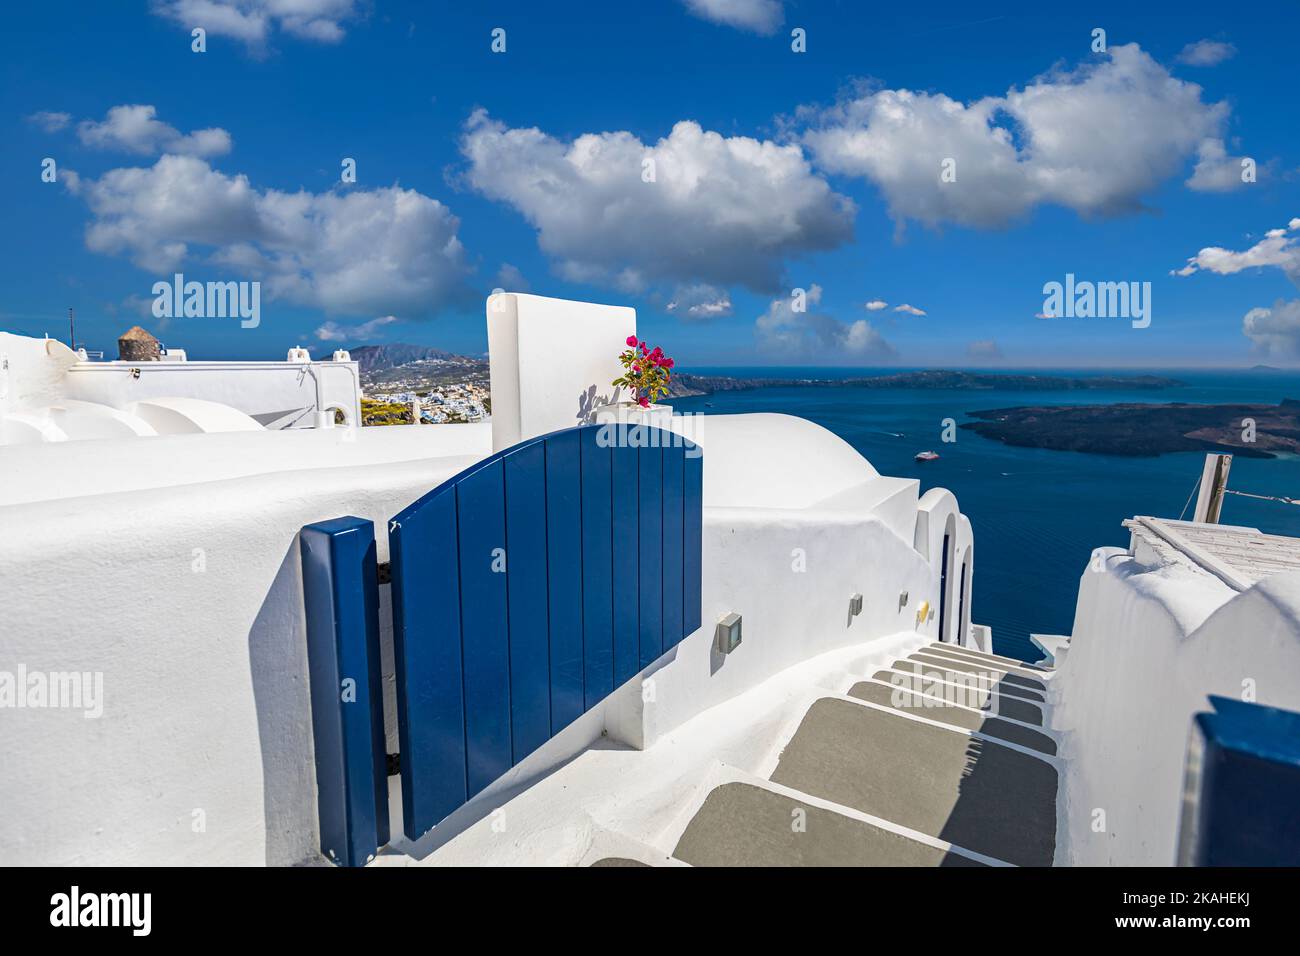 Vacances d'été ville pittoresque de luxe célèbre destination. Architecture blanche à Santorin, Grèce. Paysage de voyage parfait avec terrasse ciel bleu ensoleillé Banque D'Images